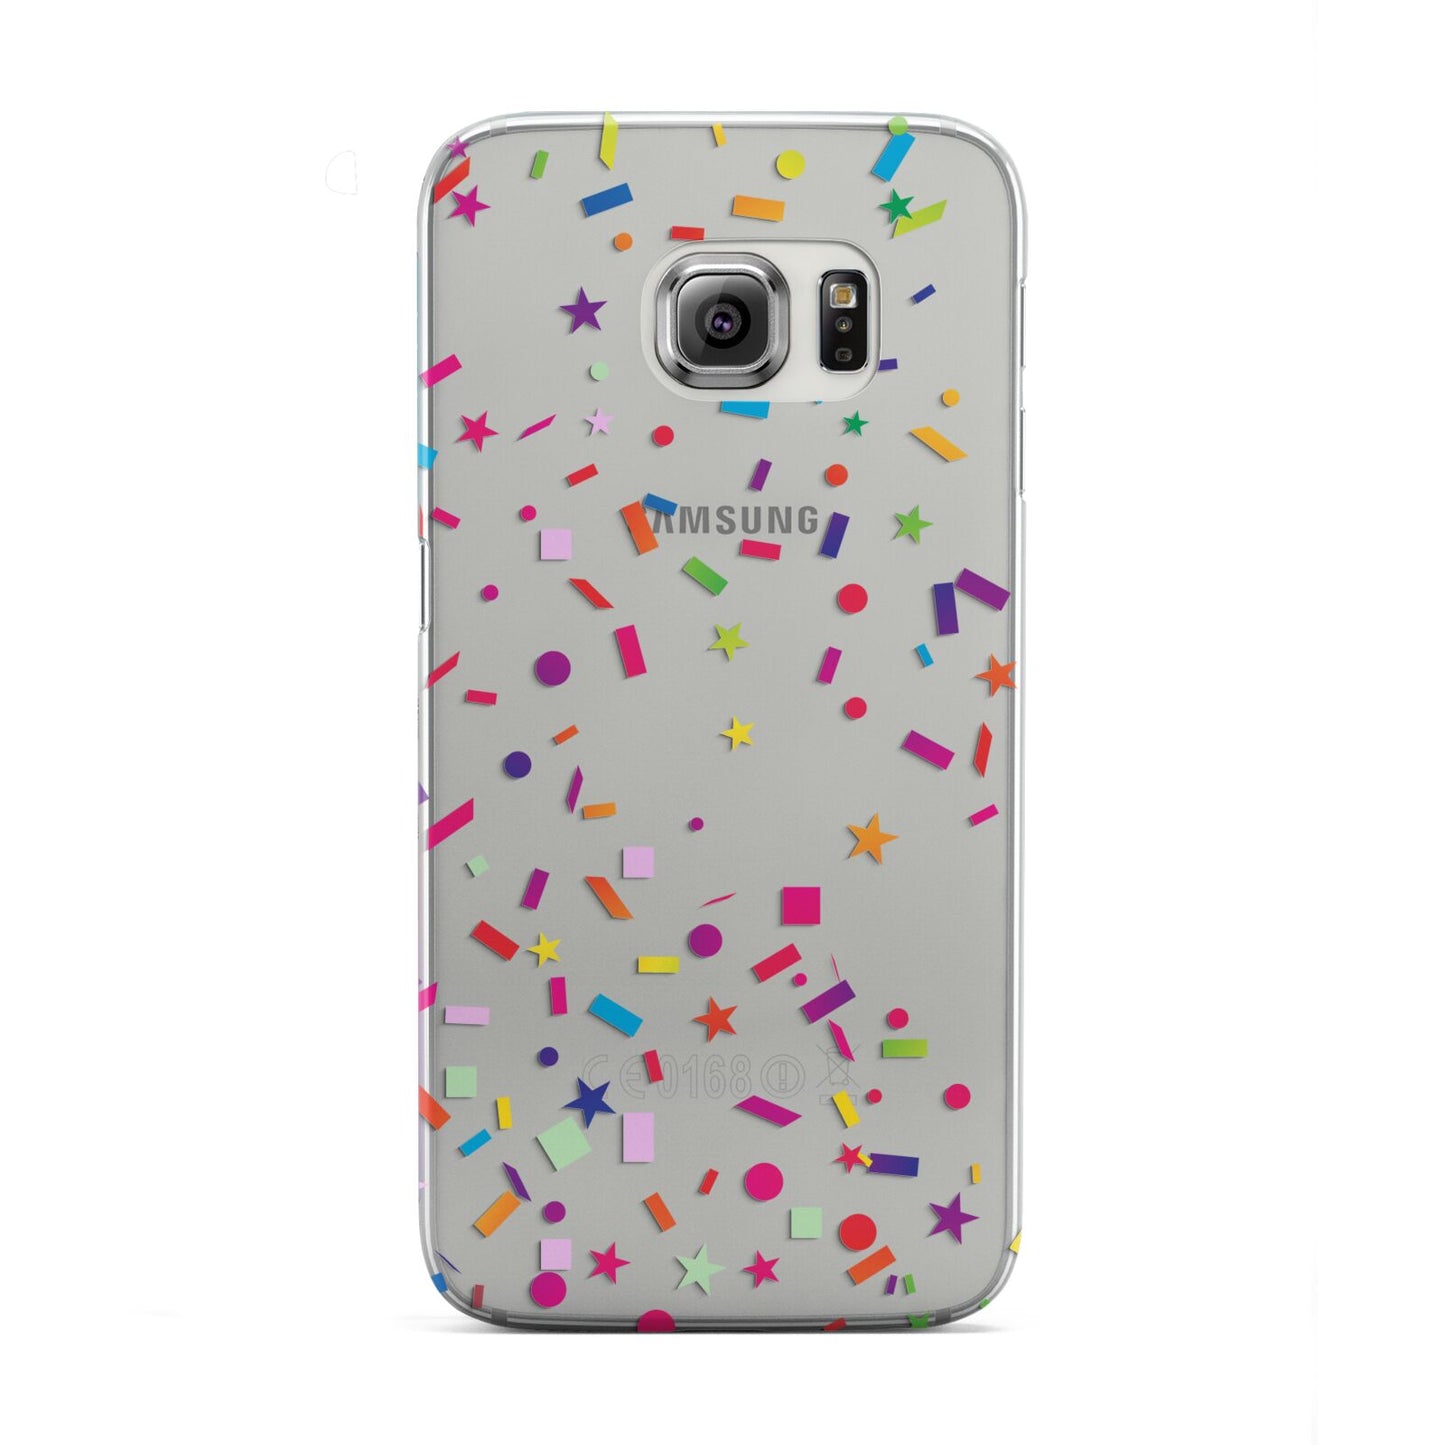 Confetti Samsung Galaxy S6 Edge Case